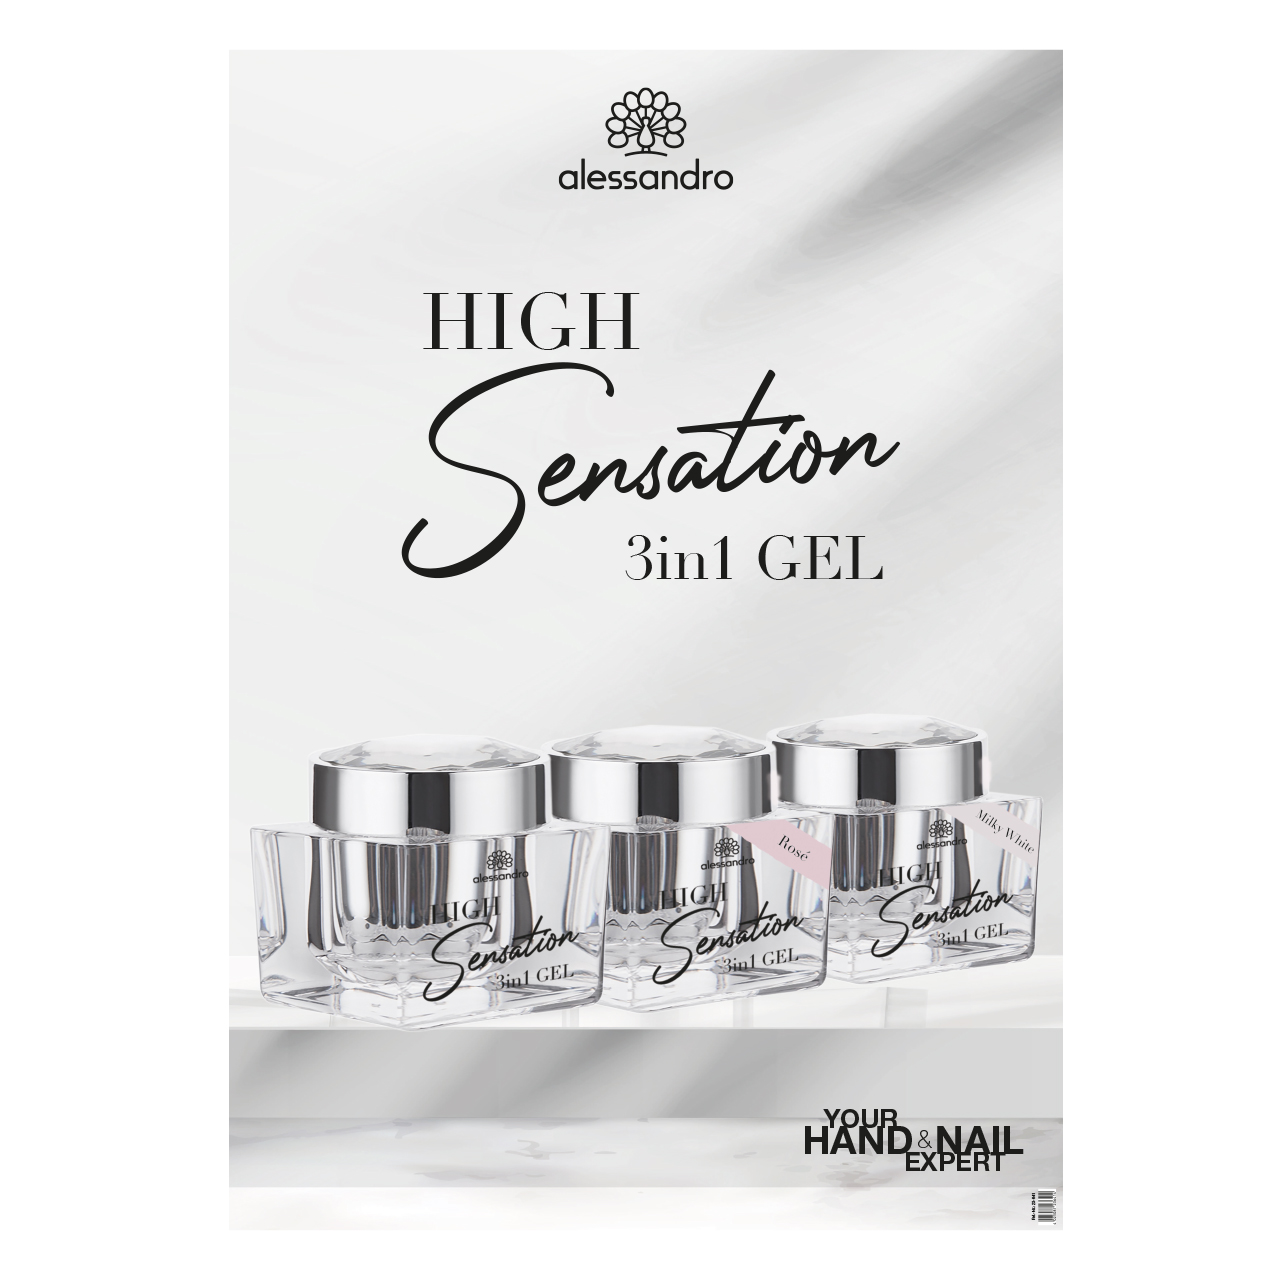 High Sensation 3in1 Gel Poster